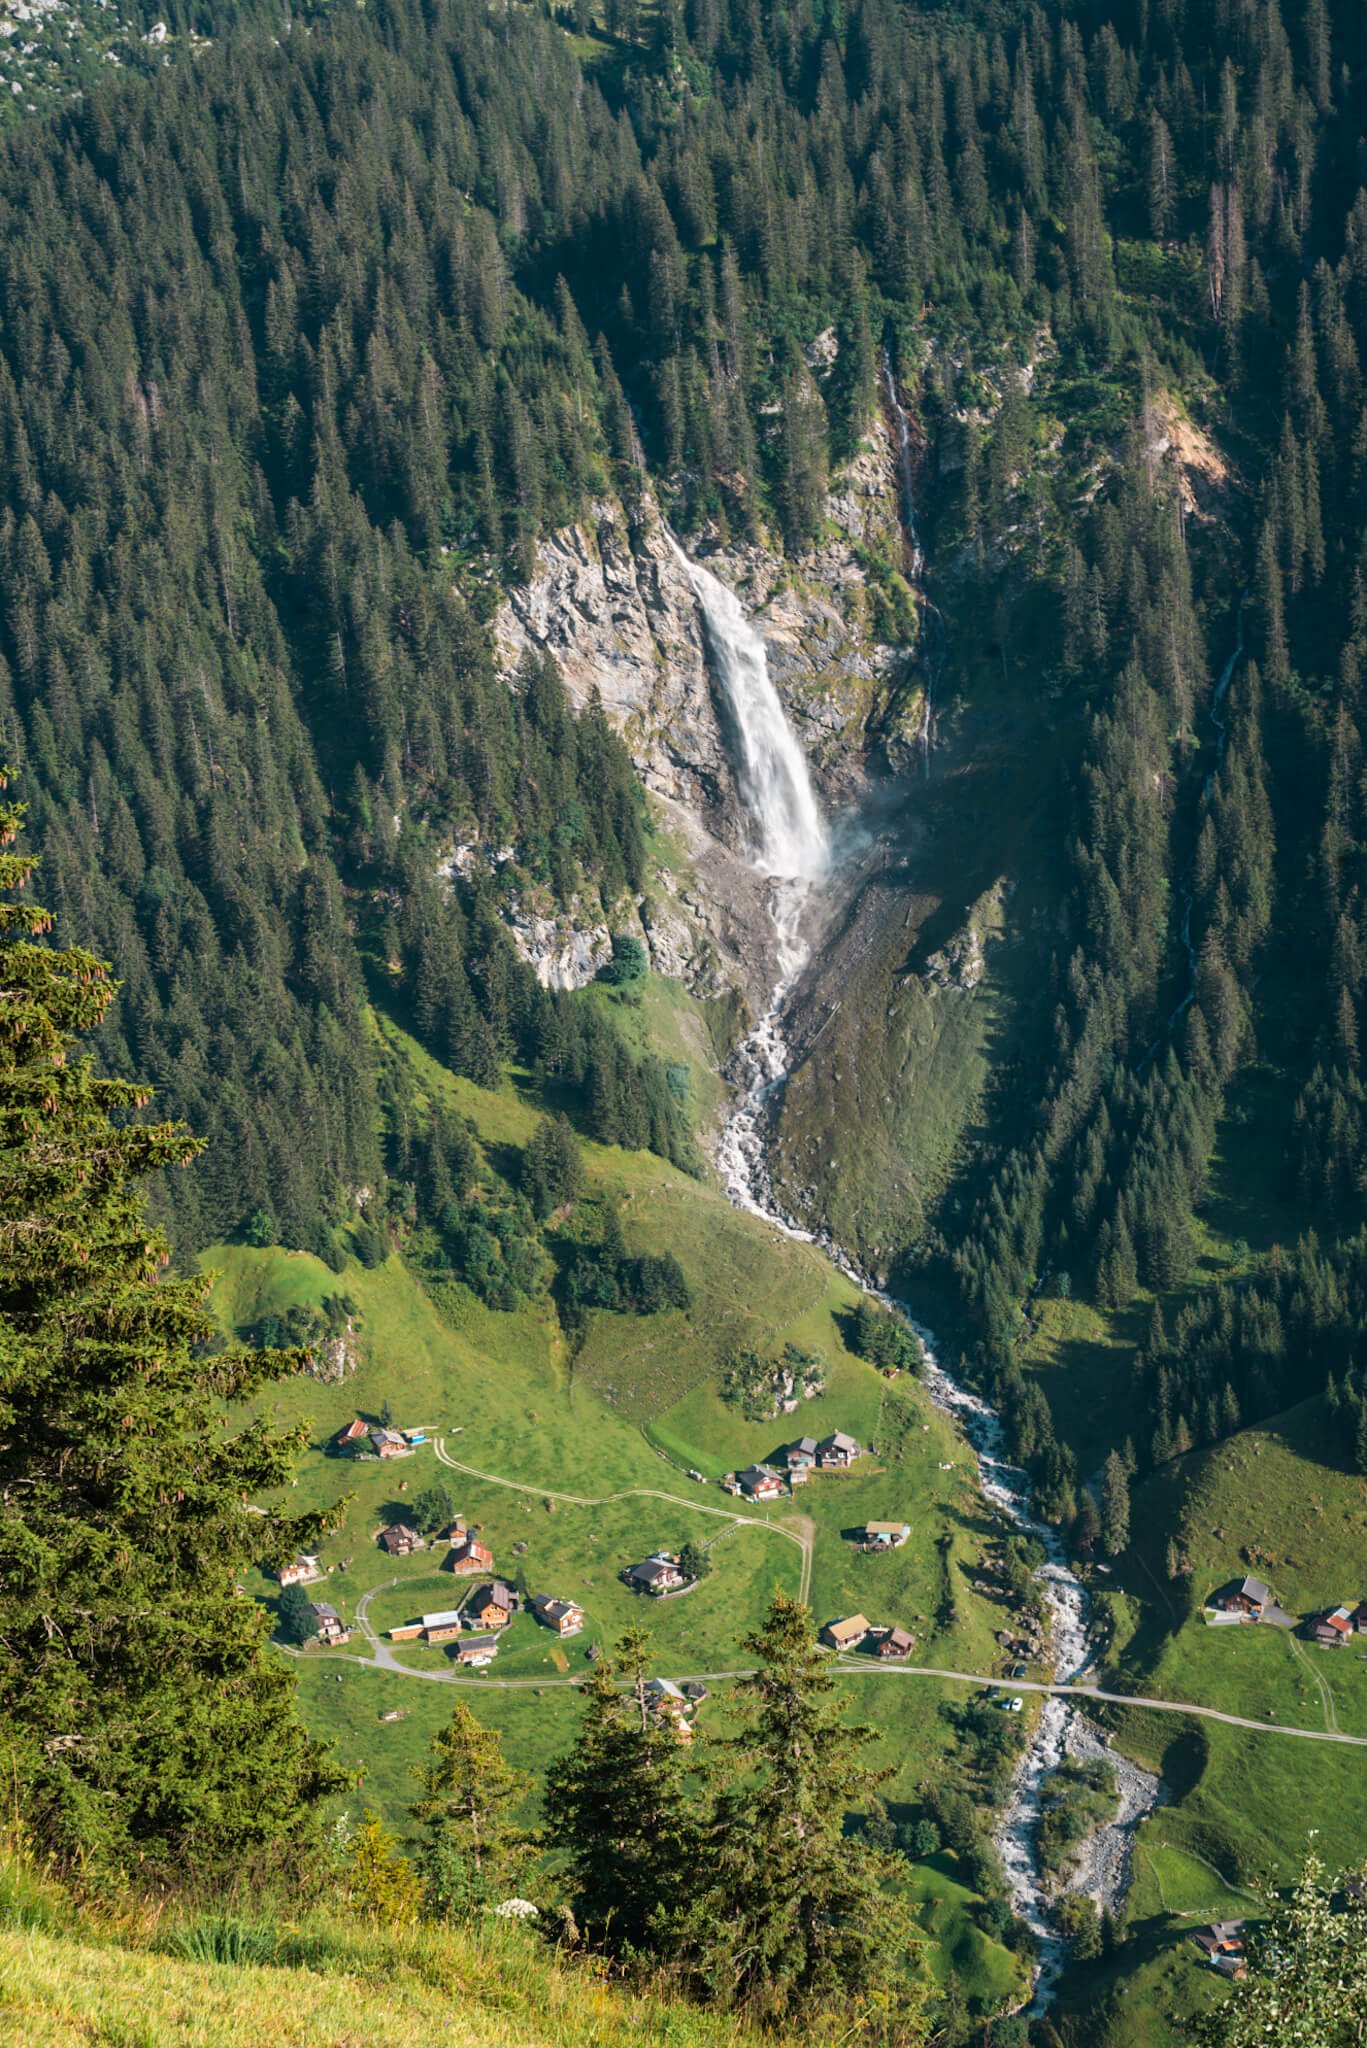 Staubifall, waterfall in Switzerland